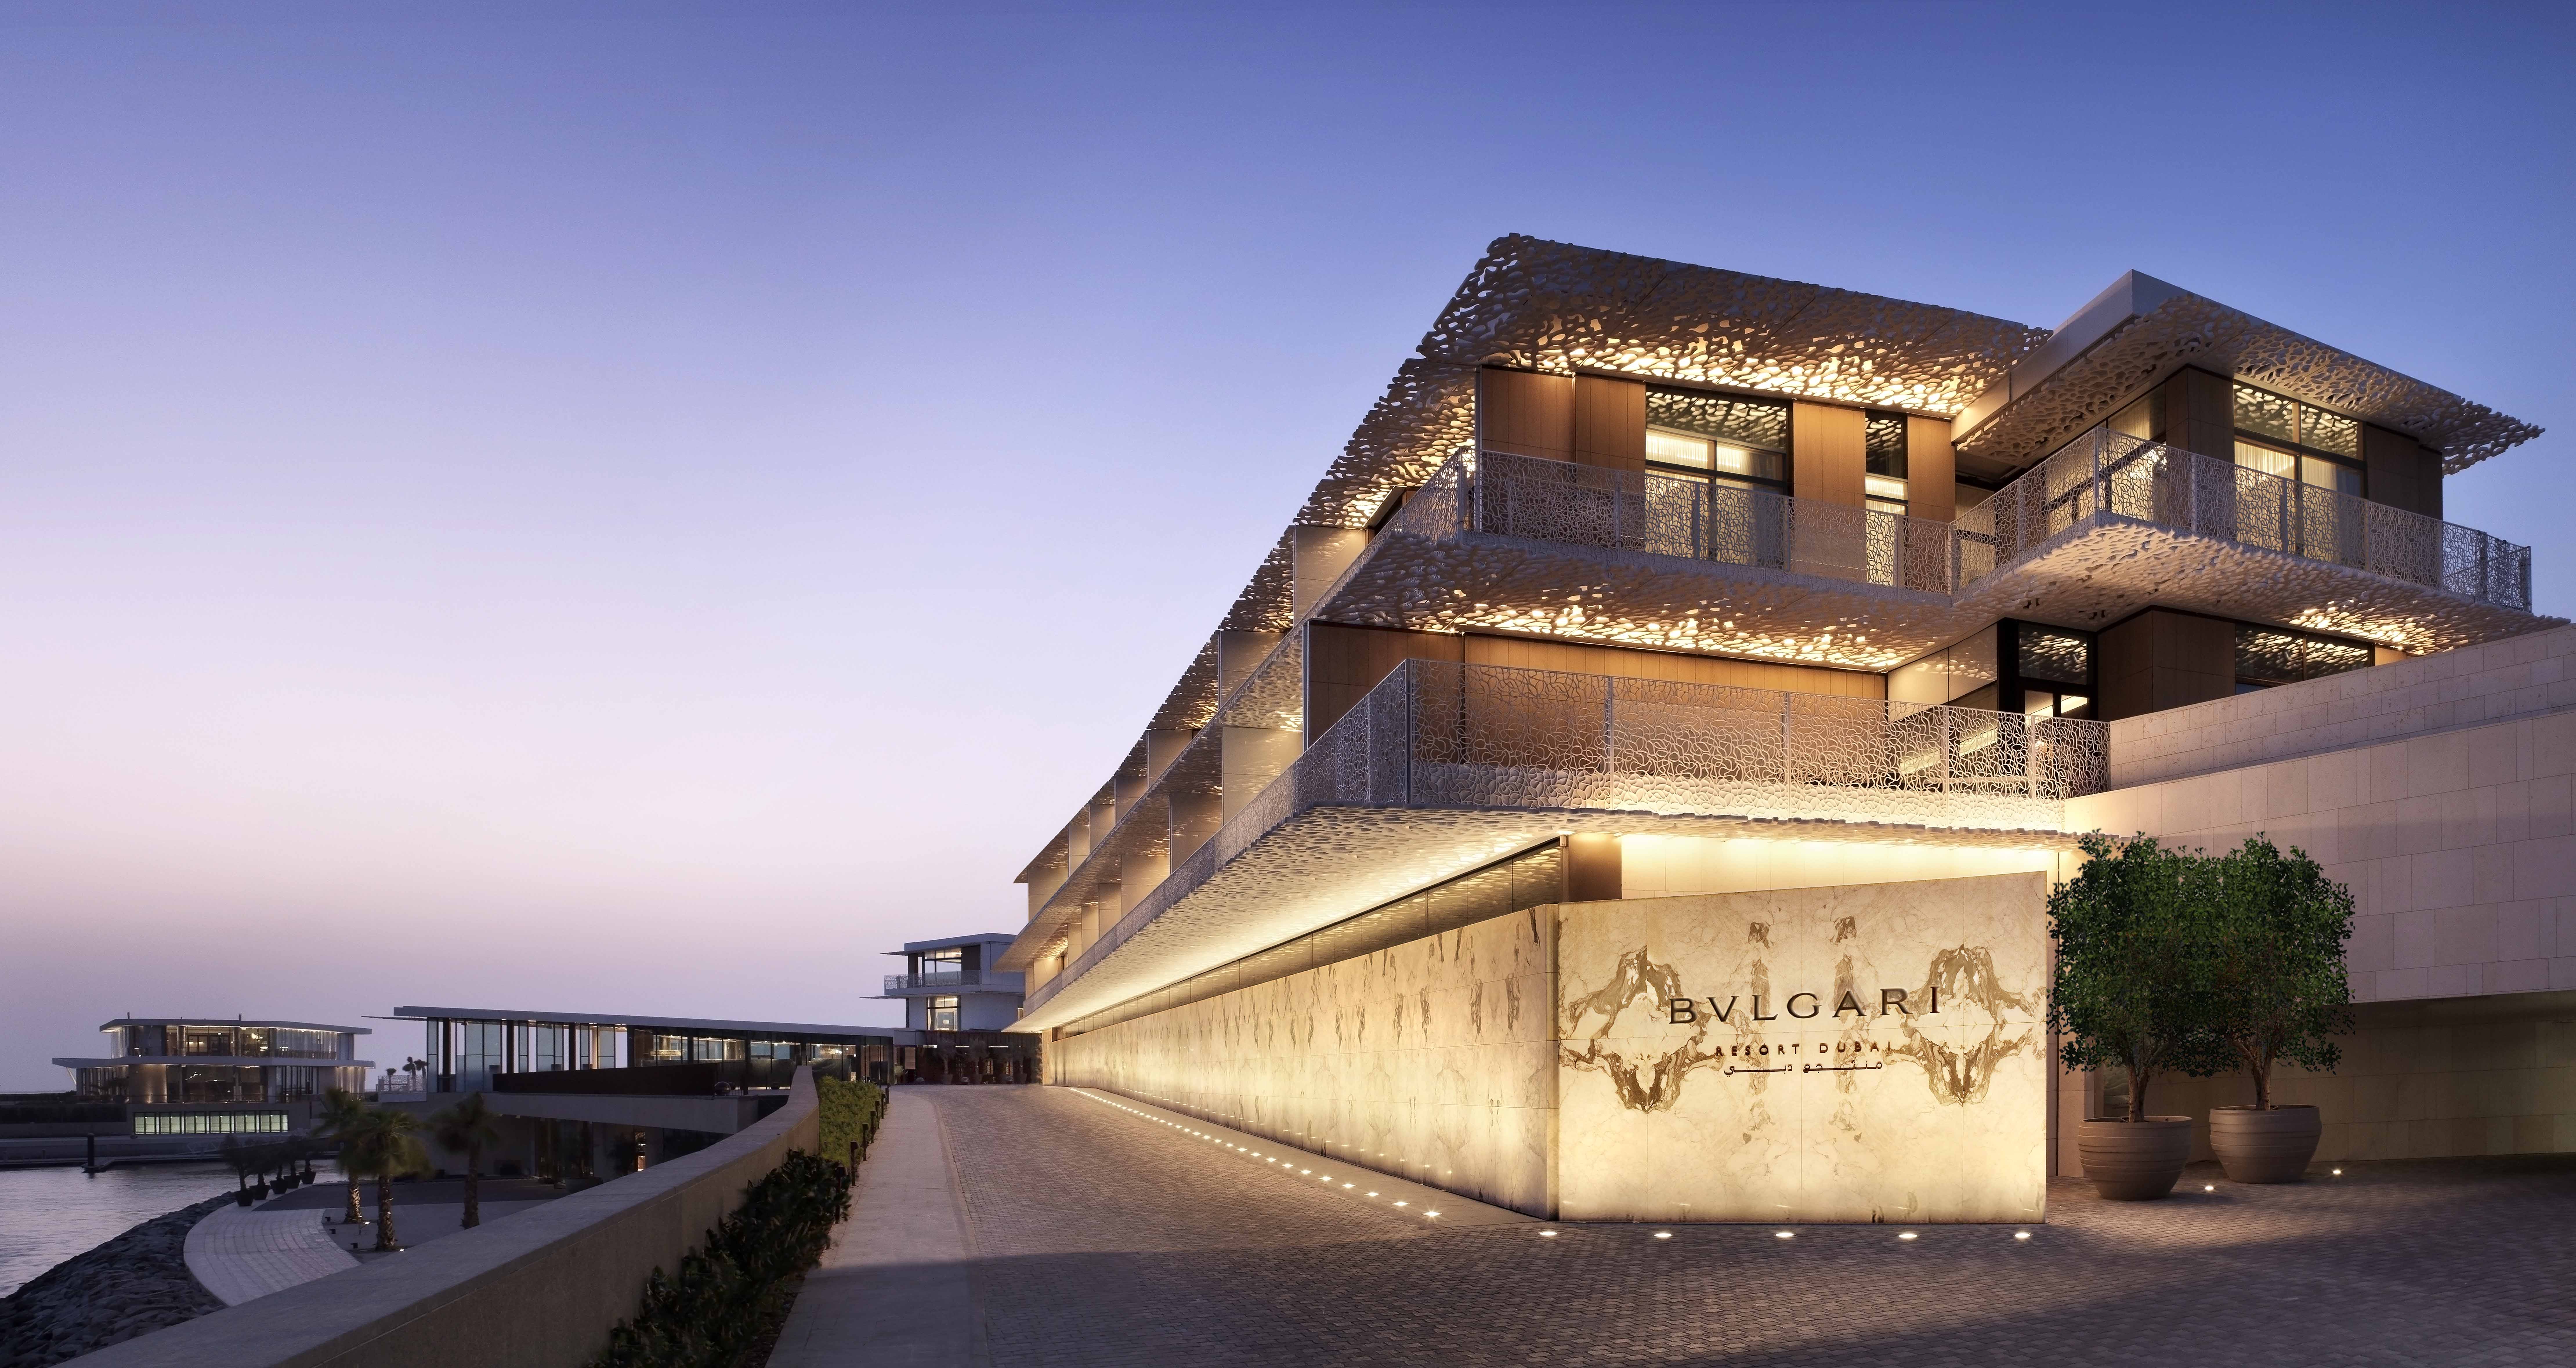  Bvlgari  Adds to Its Collection The Bvlgari  Resort  Dubai  